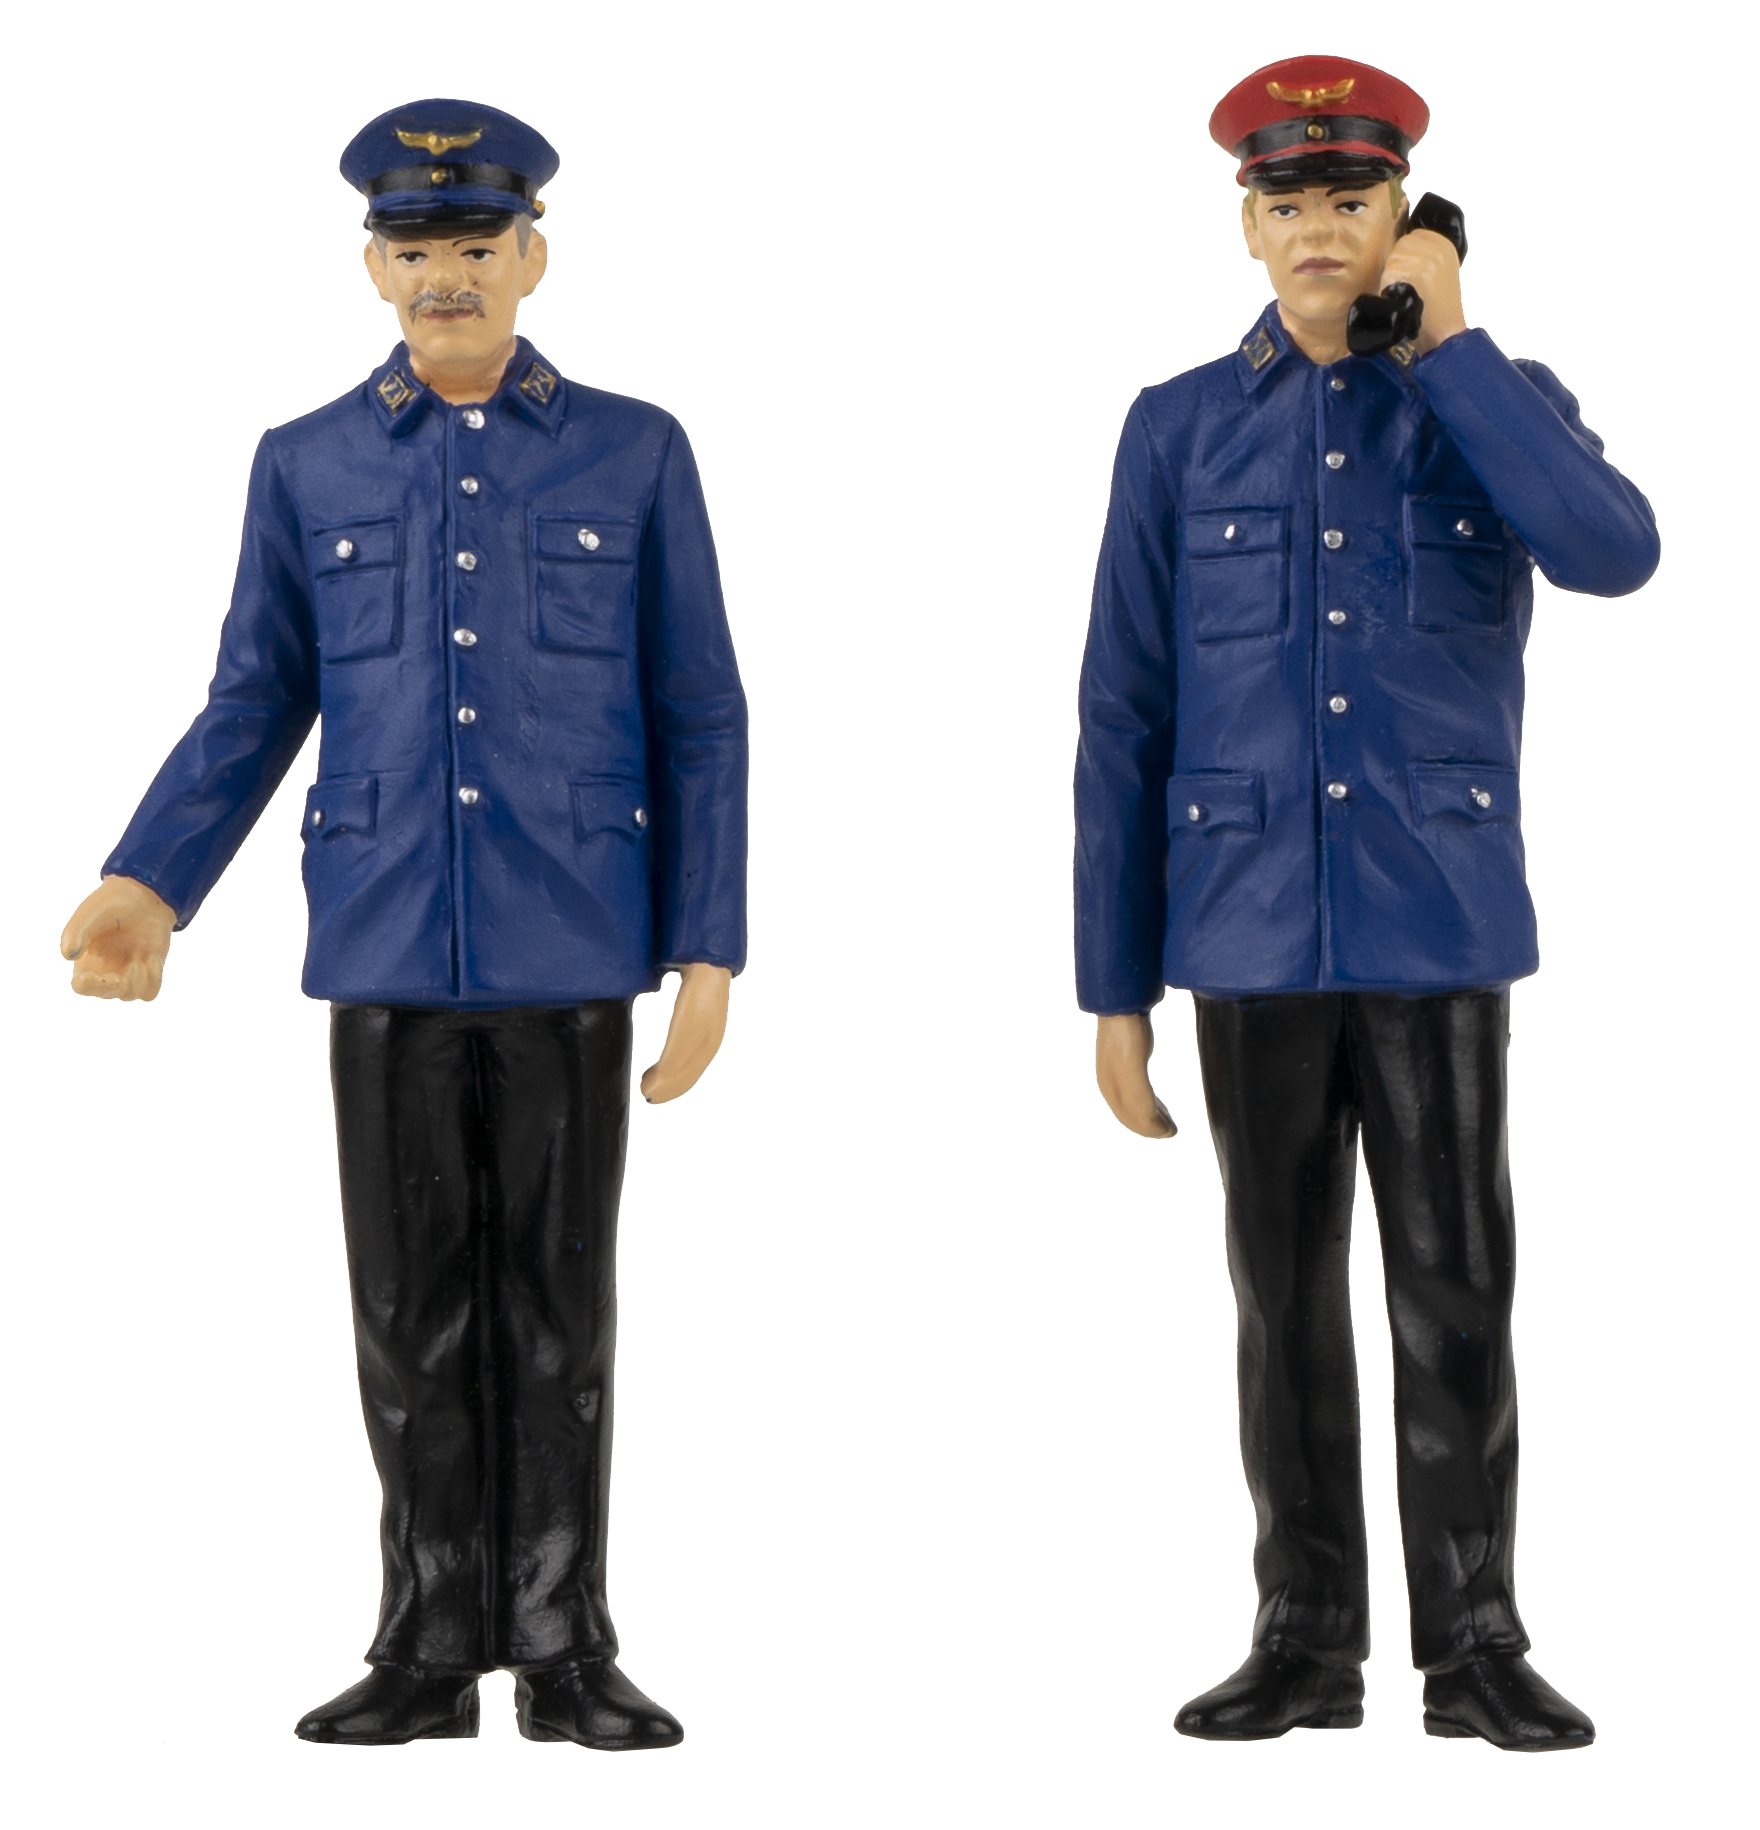 Art. Nr. 331521 - Zwei Fahrdienstleiter in Uniform mit schwarzer Hose und blauem Rock. Ein Fahrdienstleiter mit blauer Mütze. Der andere Fahrdienstleiter - mit roter Mütze - hat noch den Telefonhörer in der Hand. 